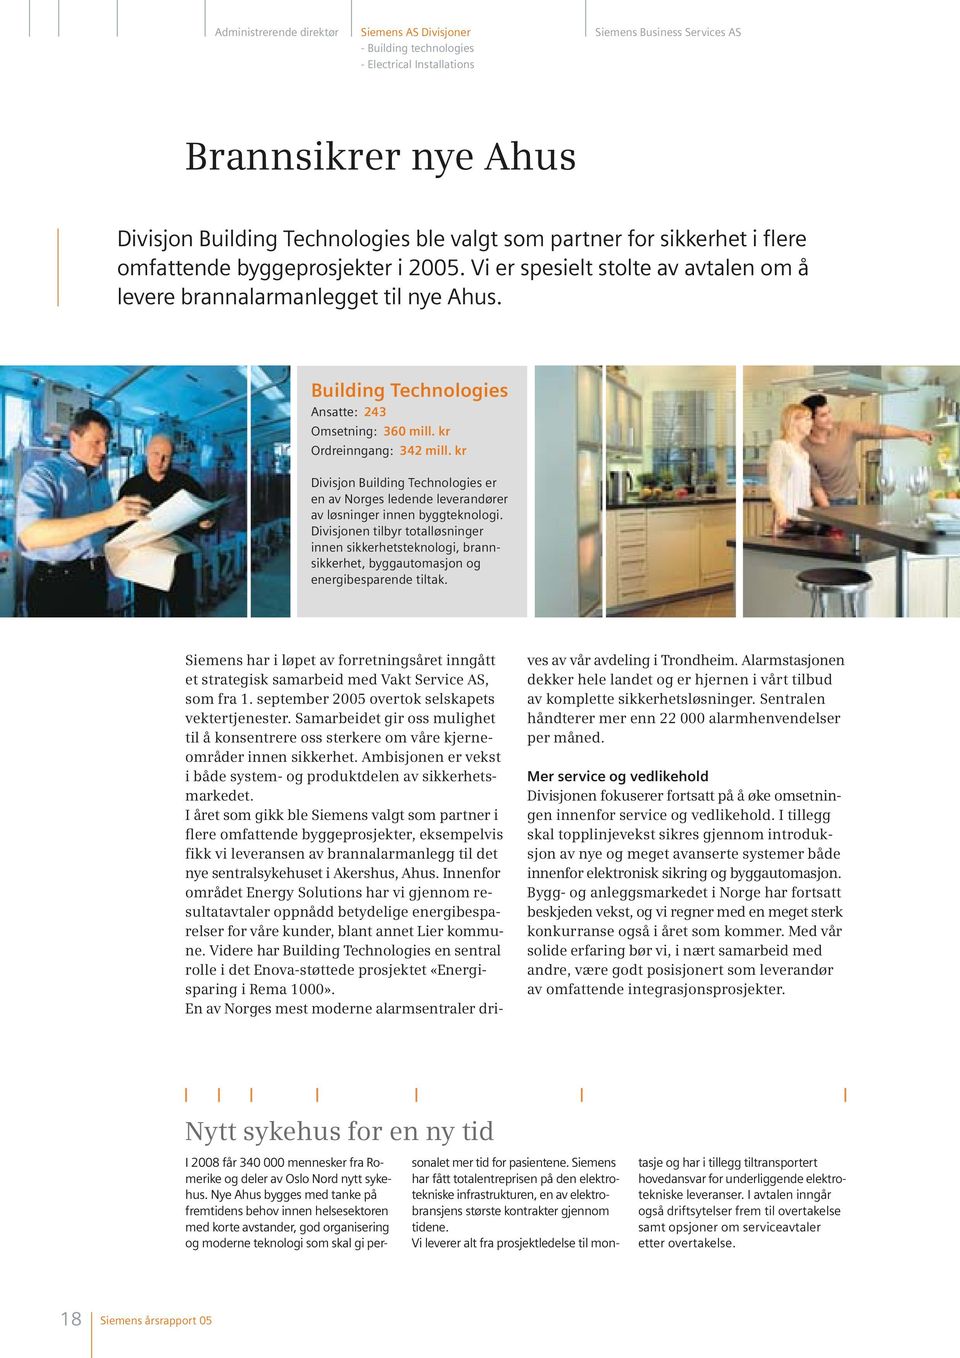 kr Ordreinngang: 342 mill. kr Divisjon Building Technologies er en av Norges ledende leverandører av løsninger innen byggteknologi.